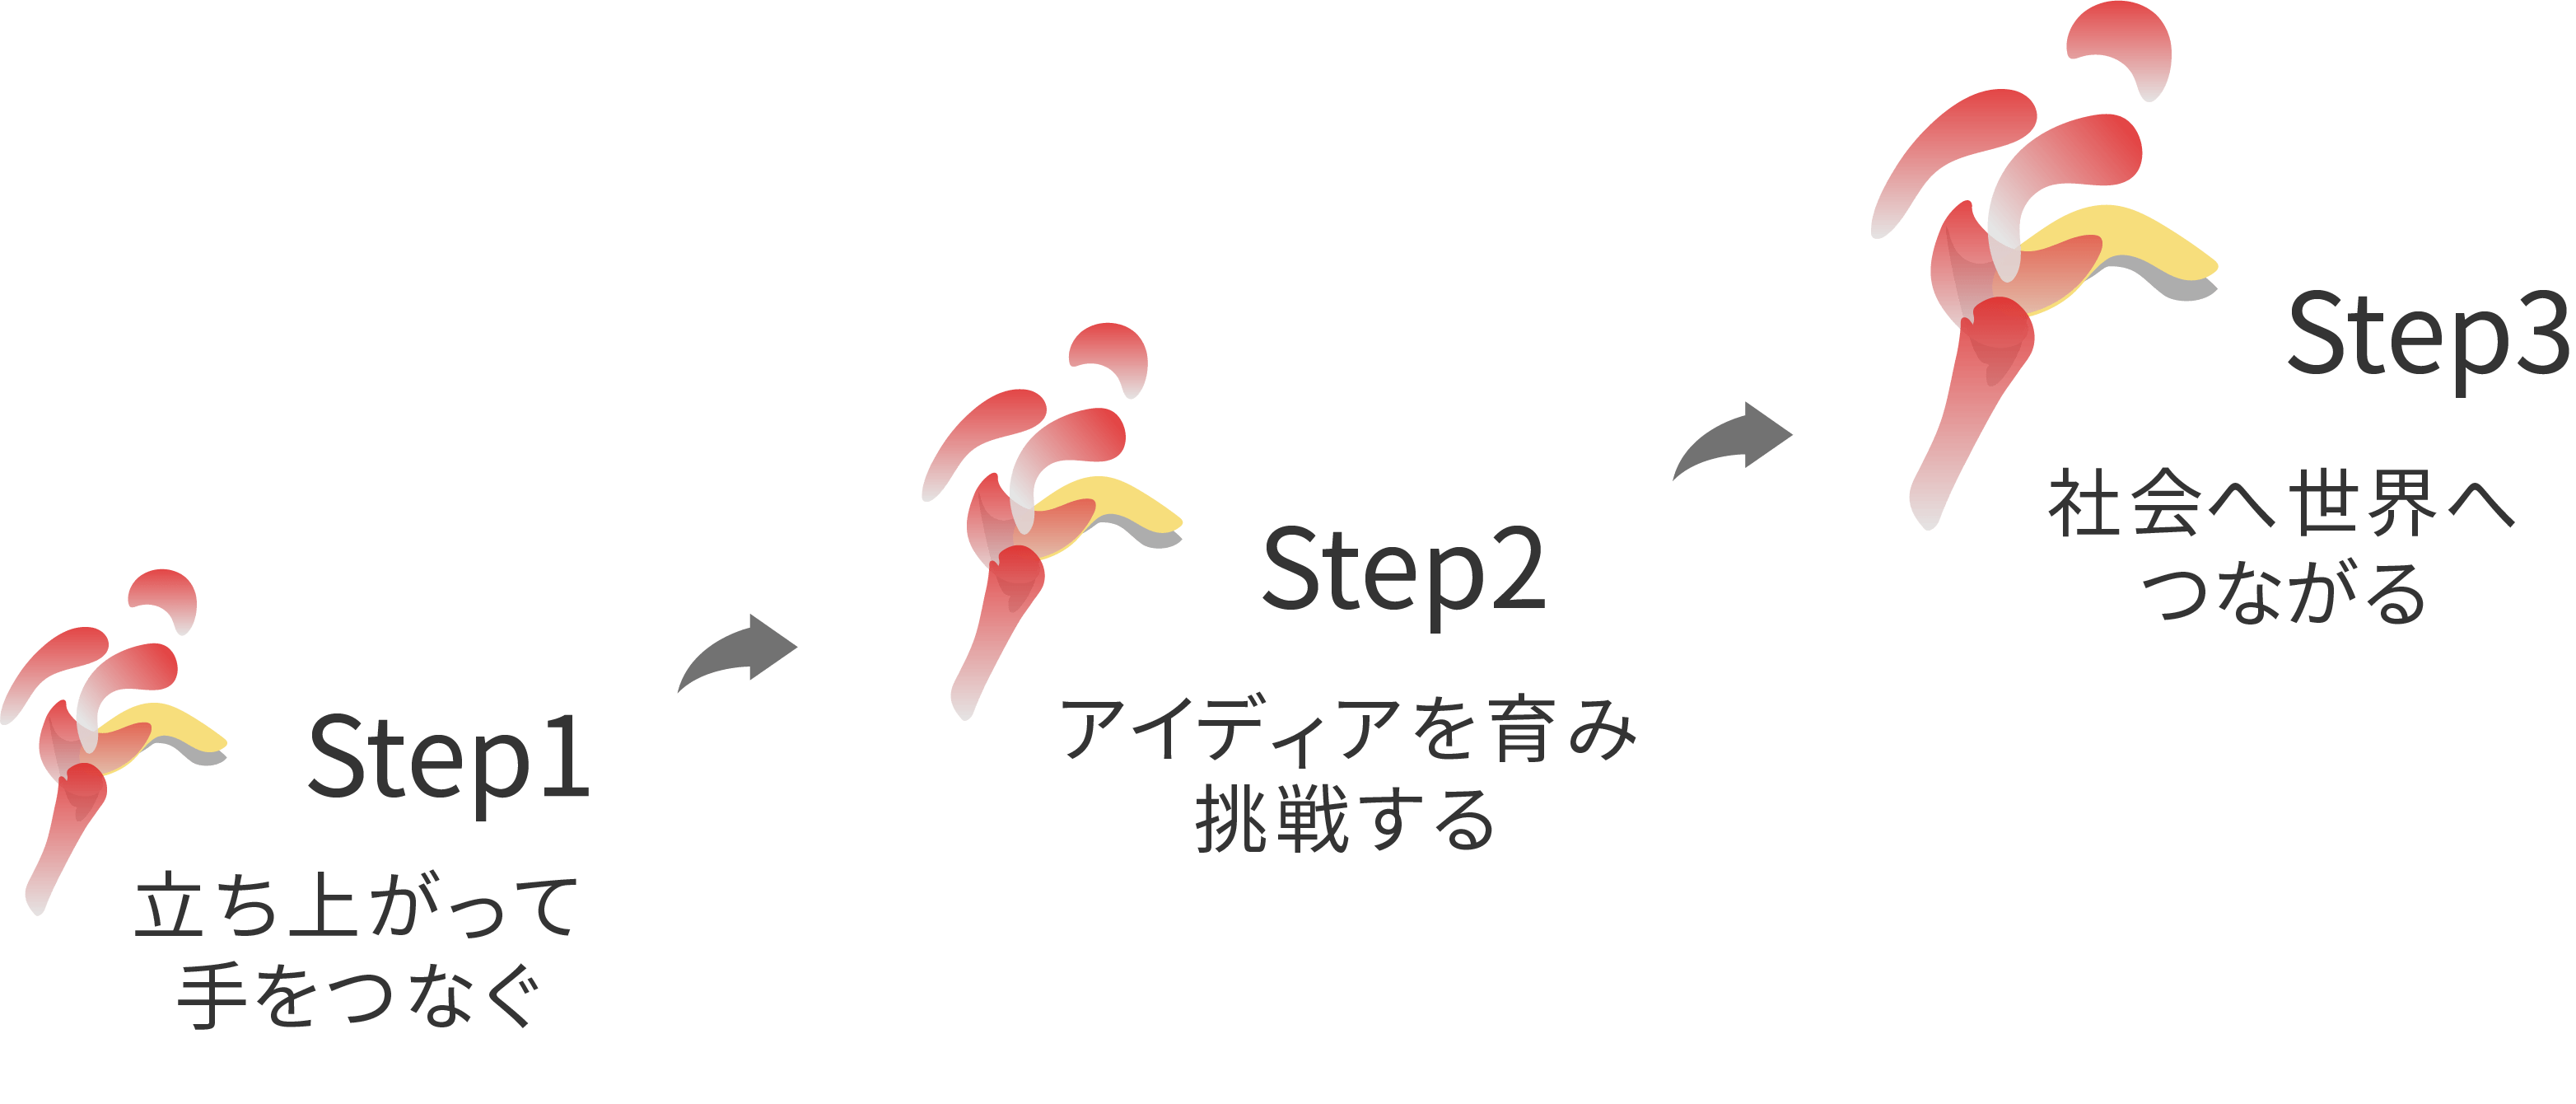 和田ゼミ社会起業研究会の3ステップの図